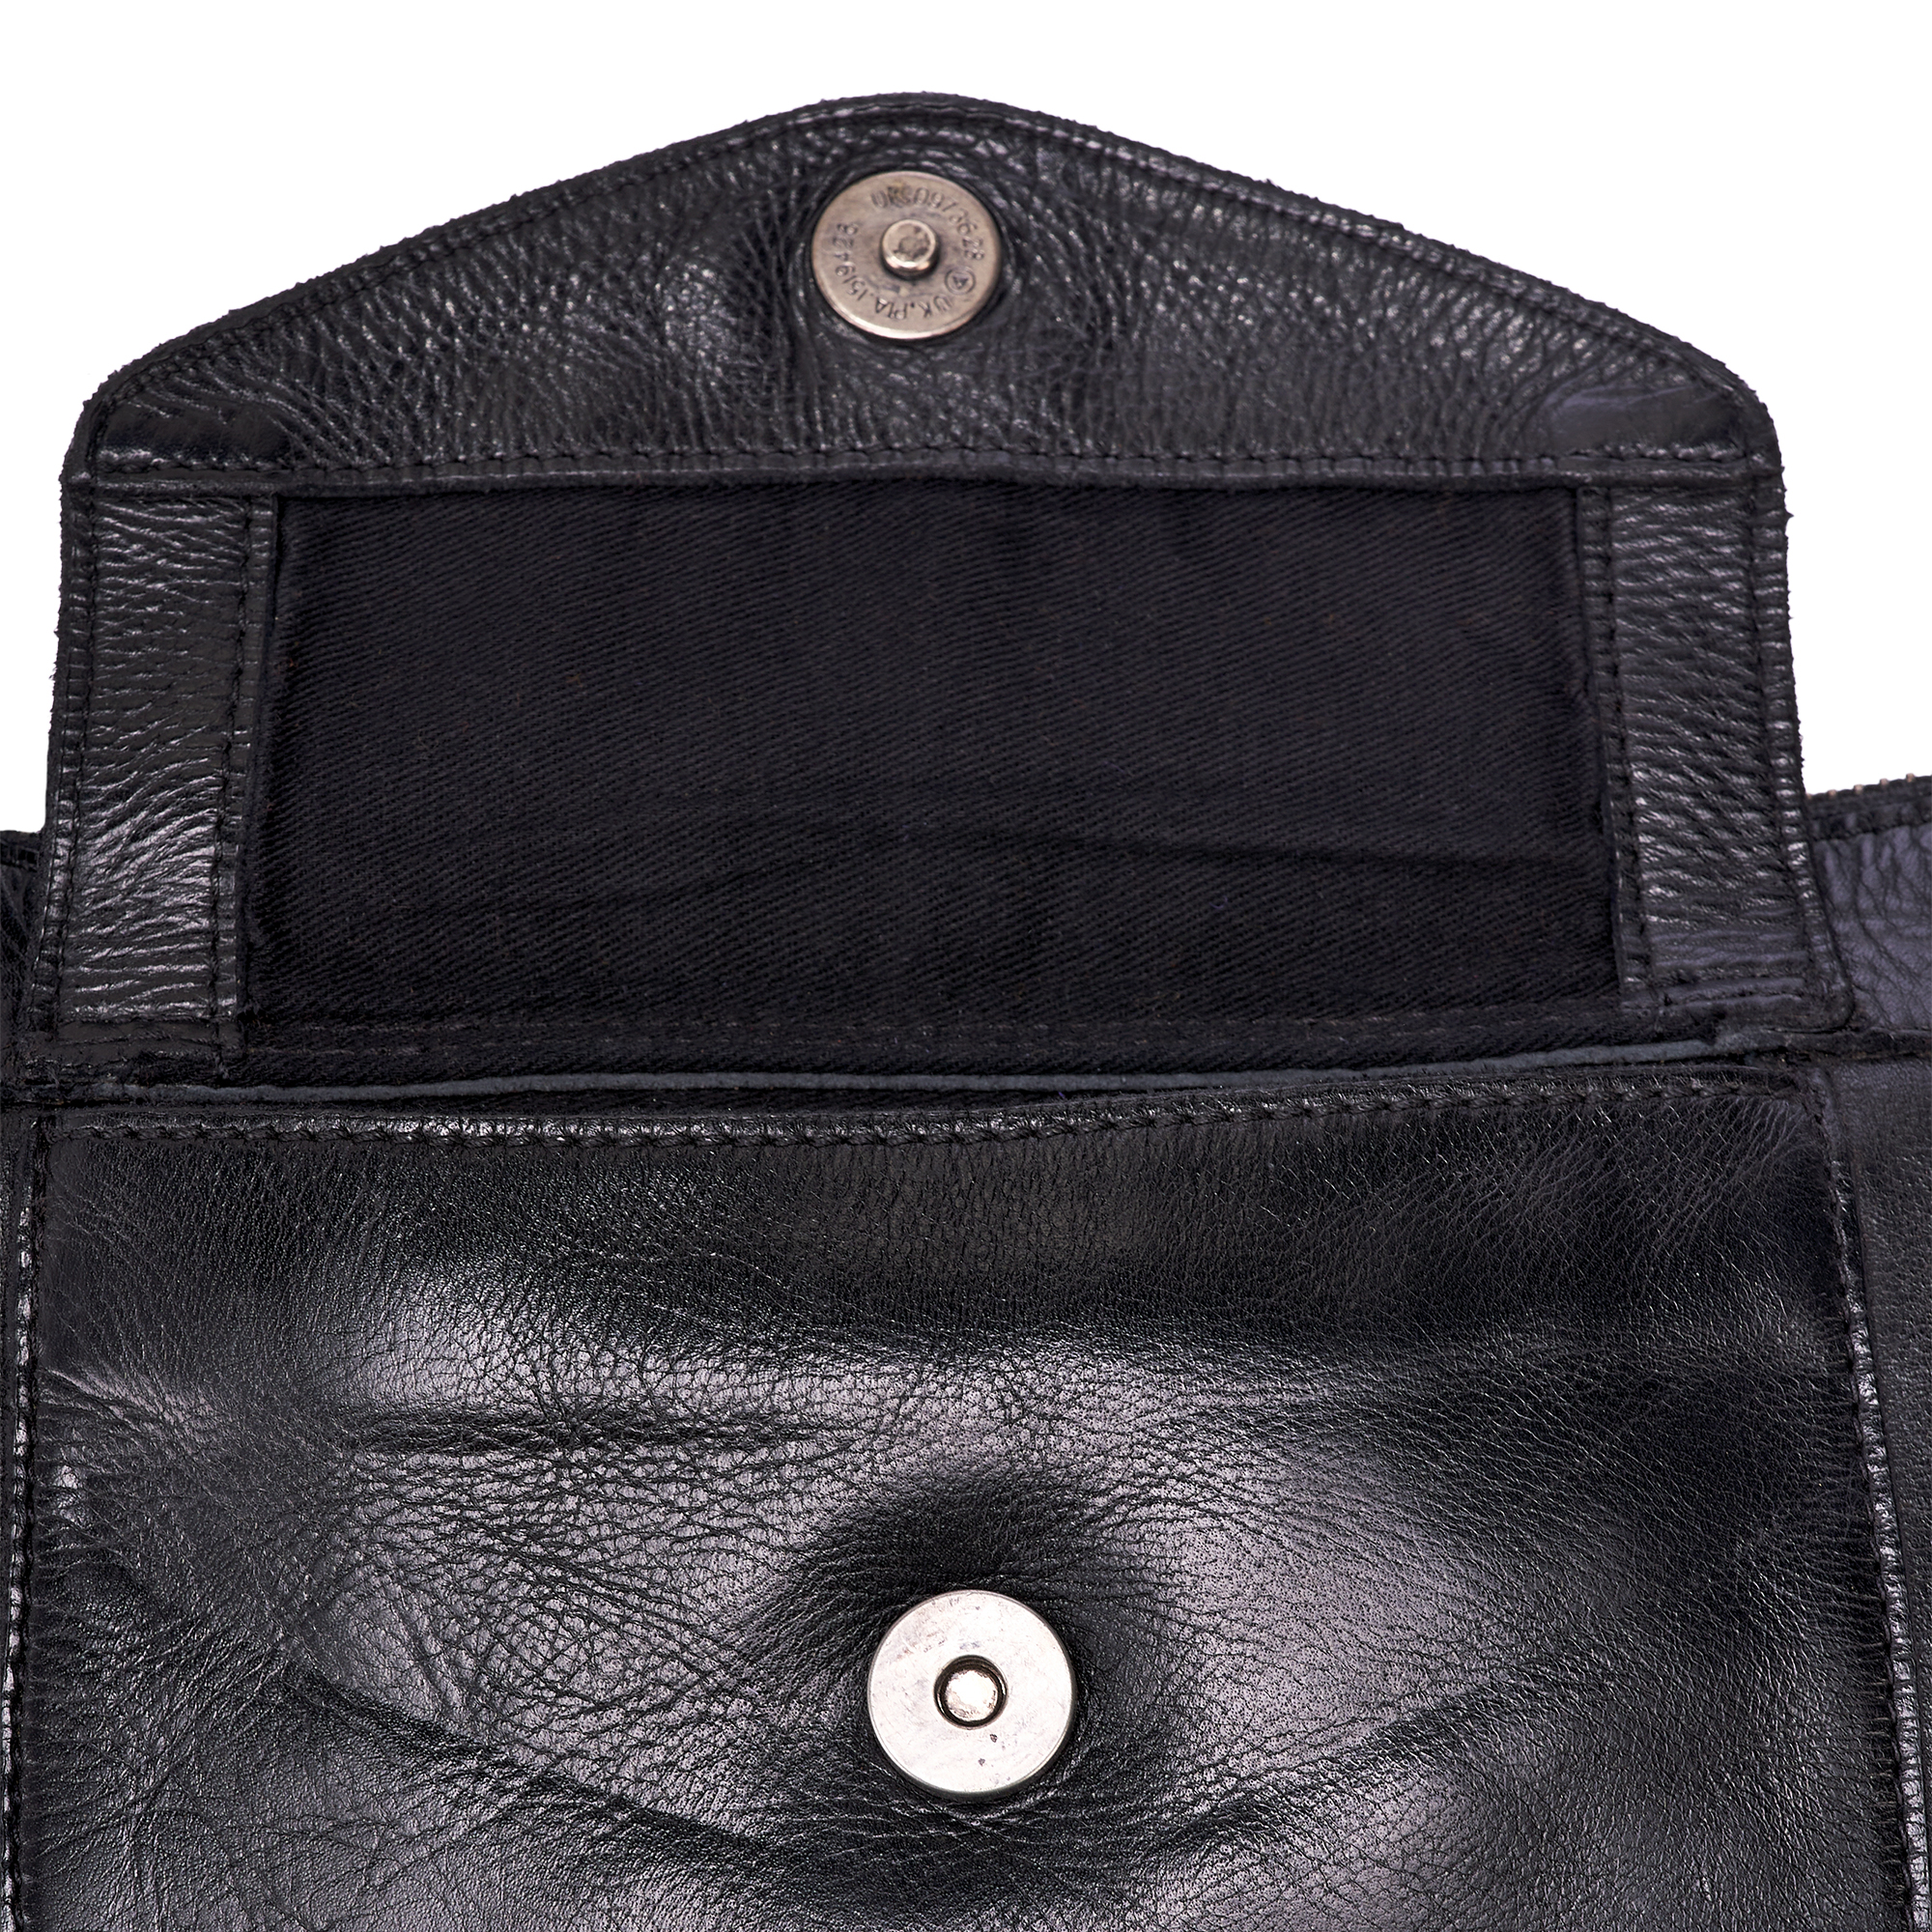 Др.Коффер W620115-249-04 сумка через плечо, цвет черный - фото 2